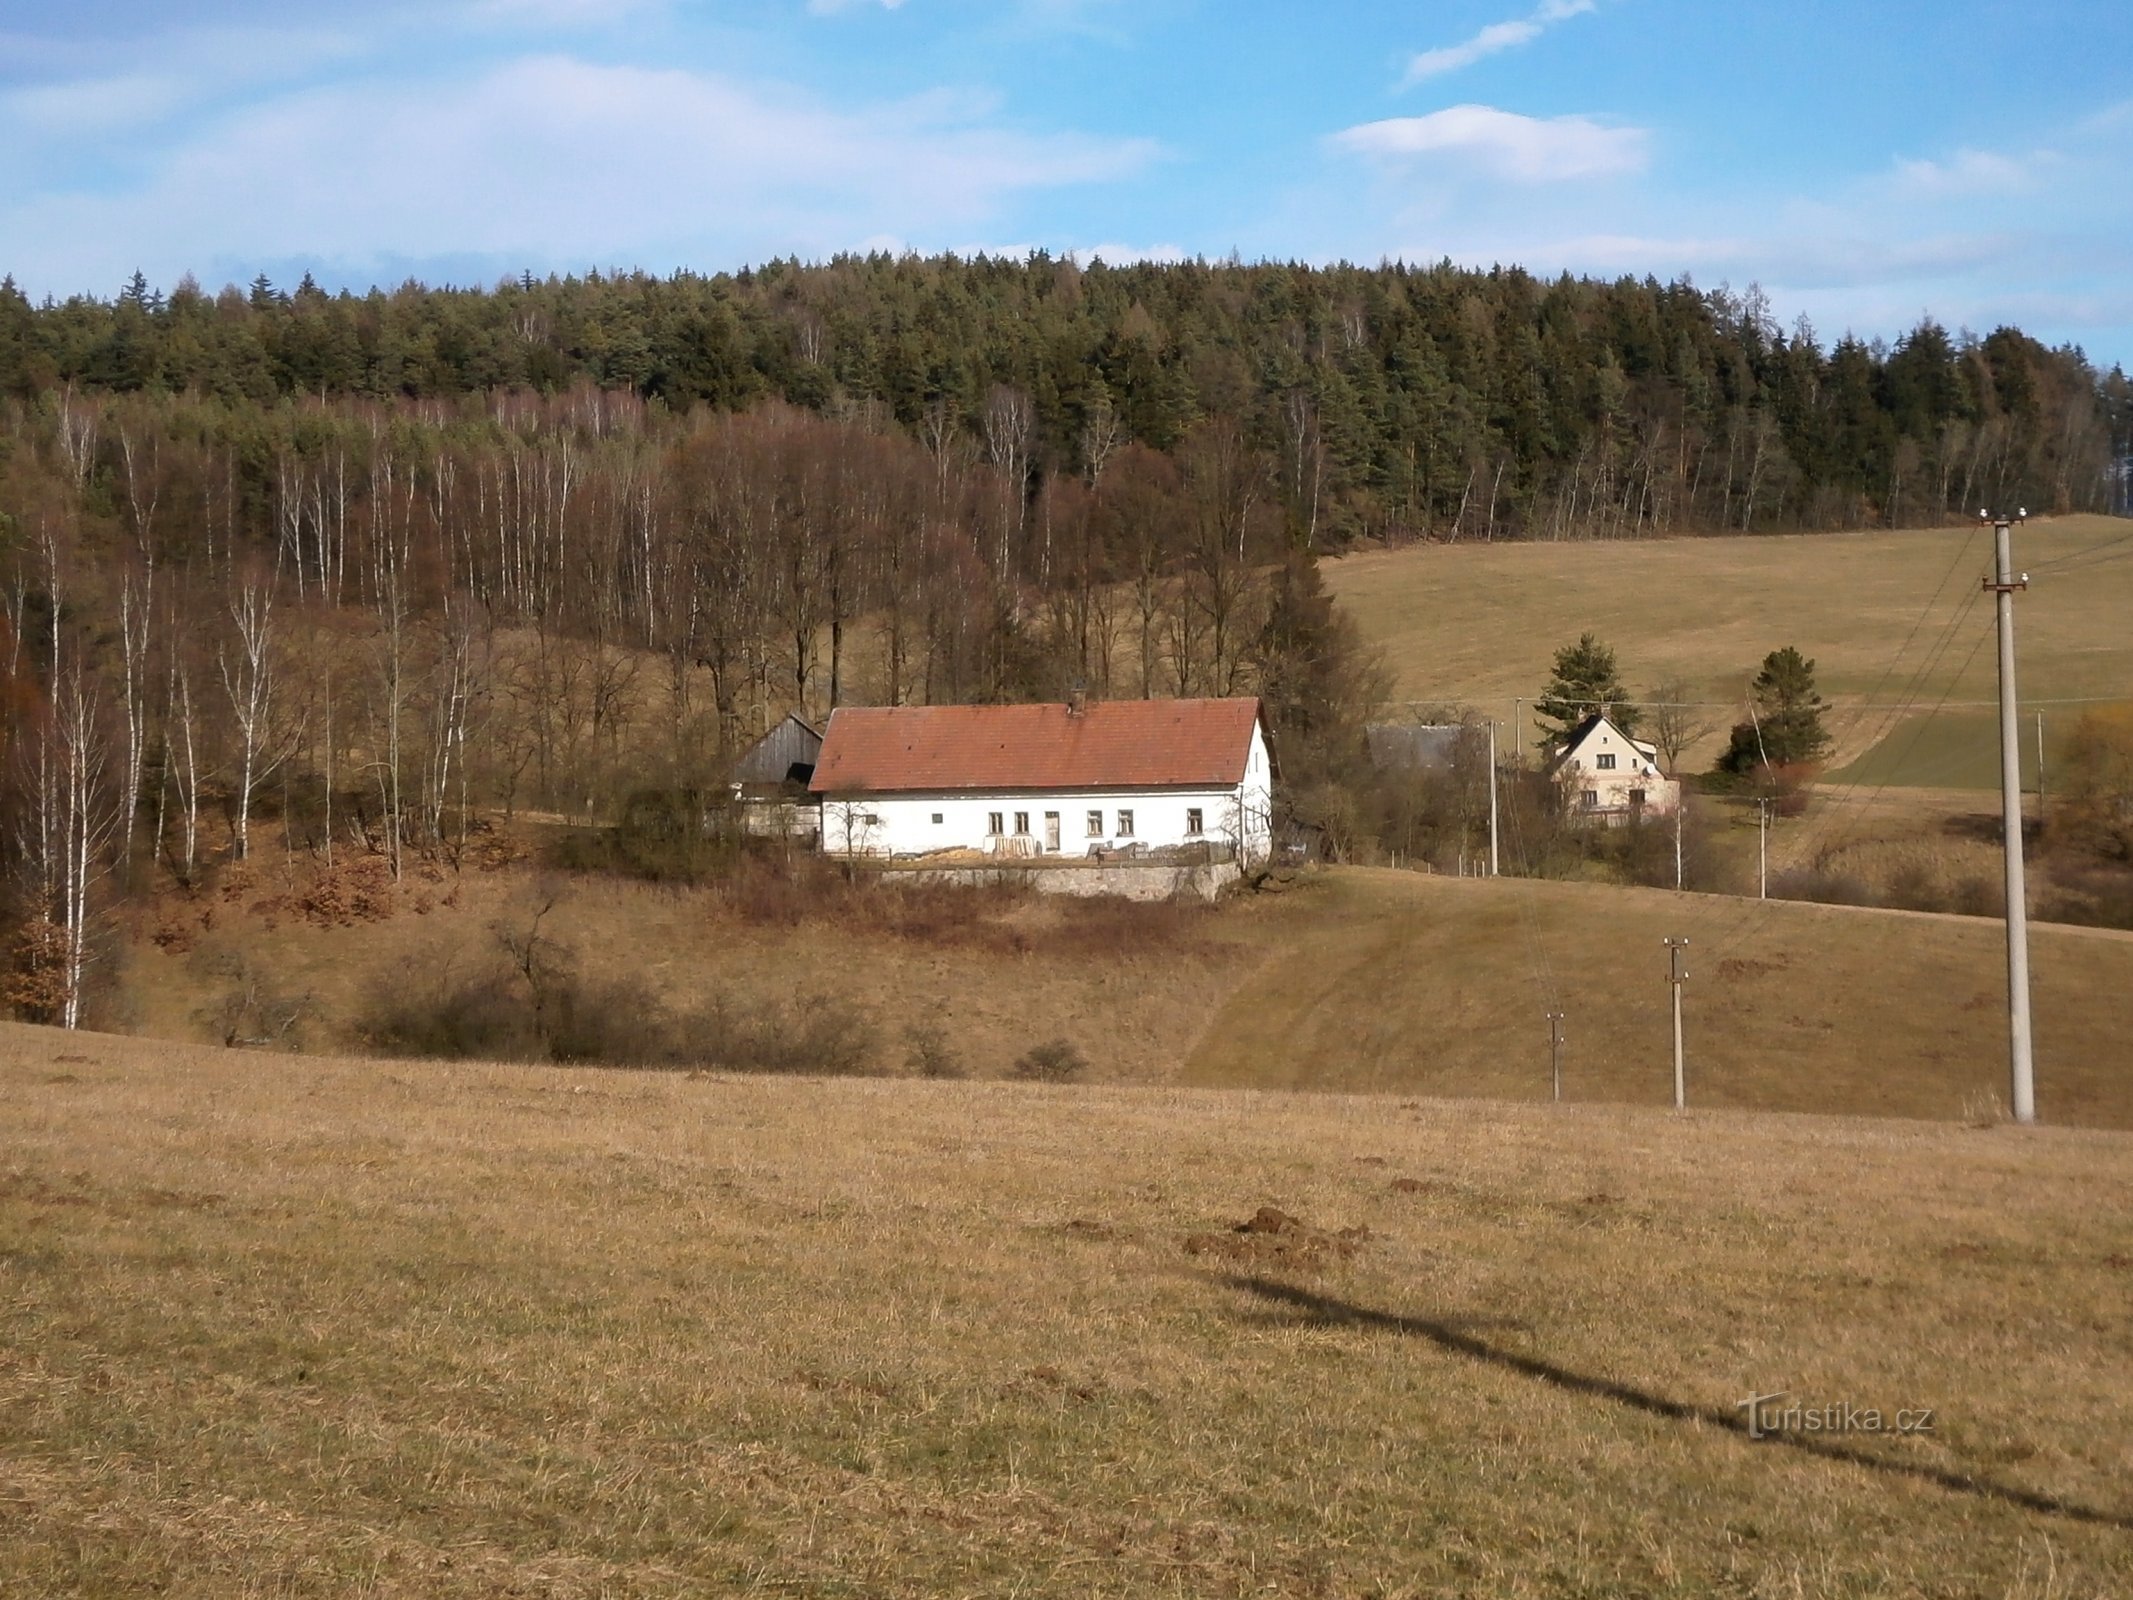 Svobodné 的 Havelovice 部分